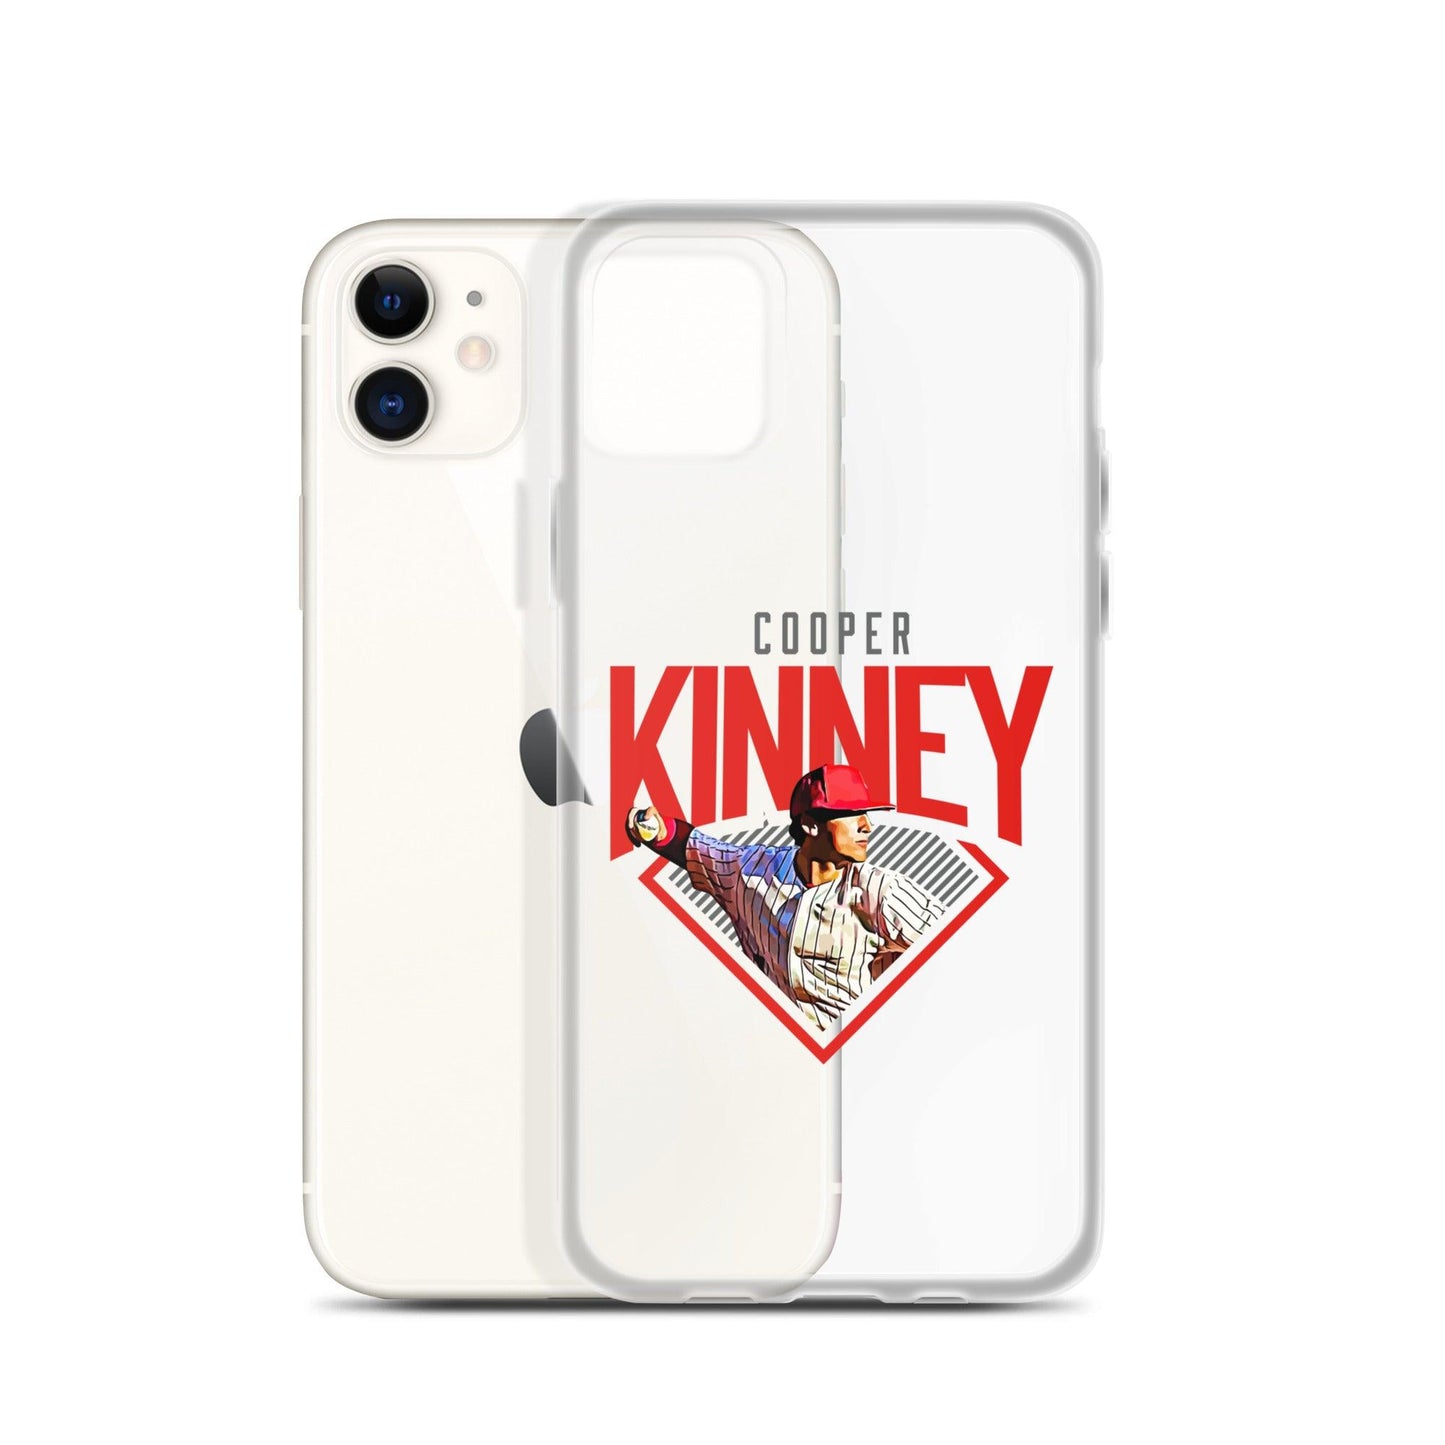 Cooper Kinney "Diamond" iPhone Case - Fan Arch